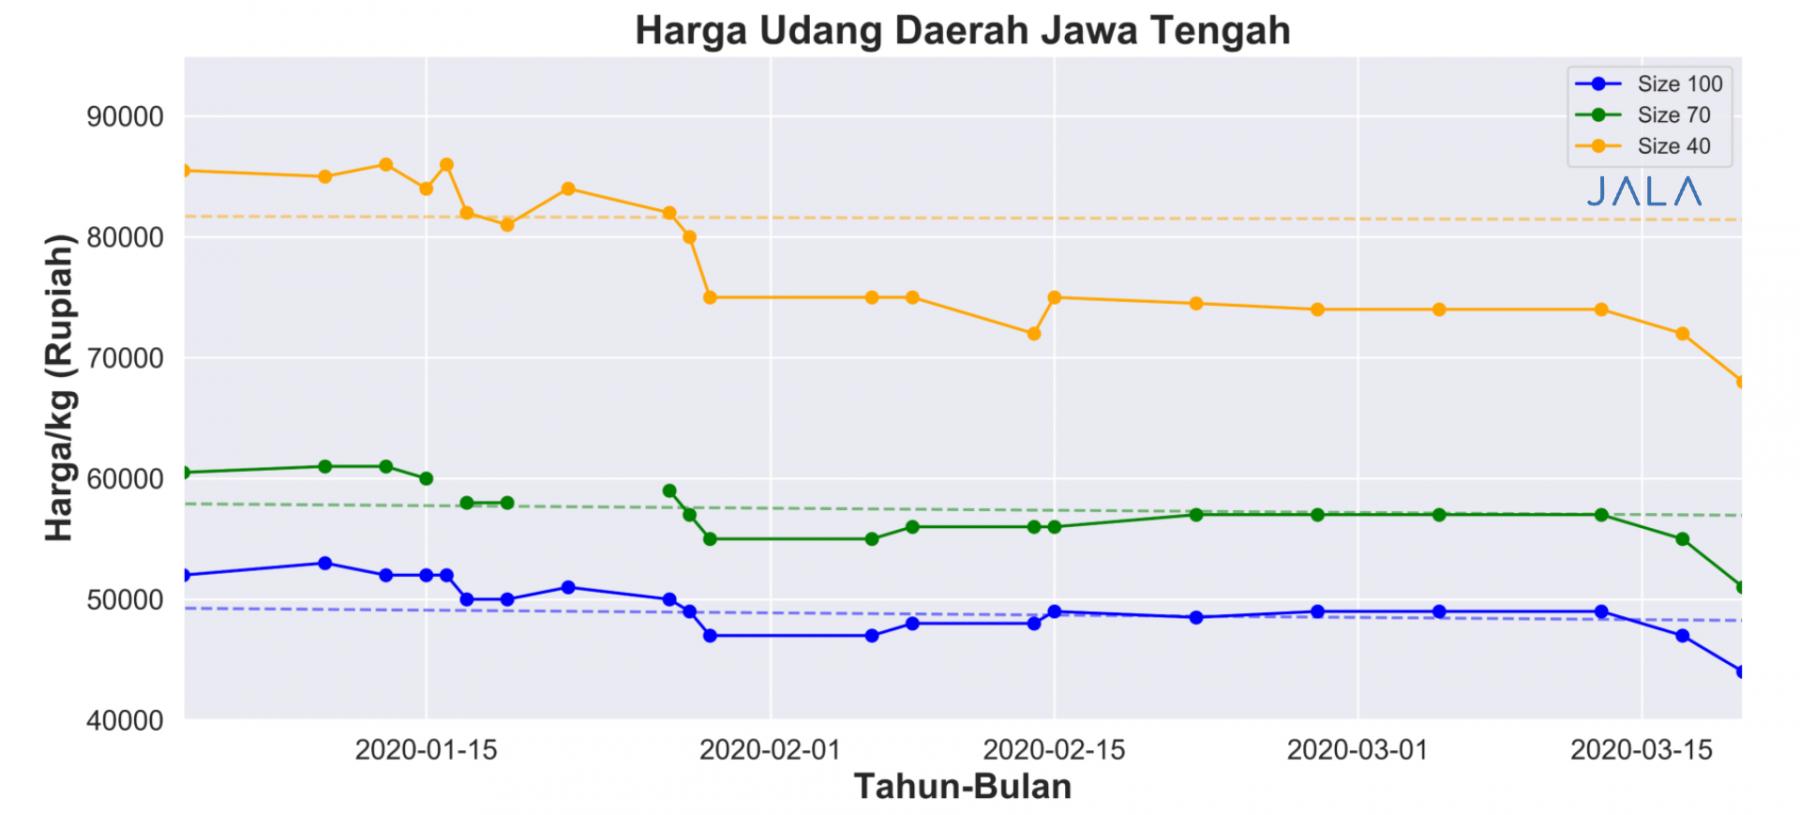 Harga udang daerah Jawa Tengah bulan Januari-Maret 2020